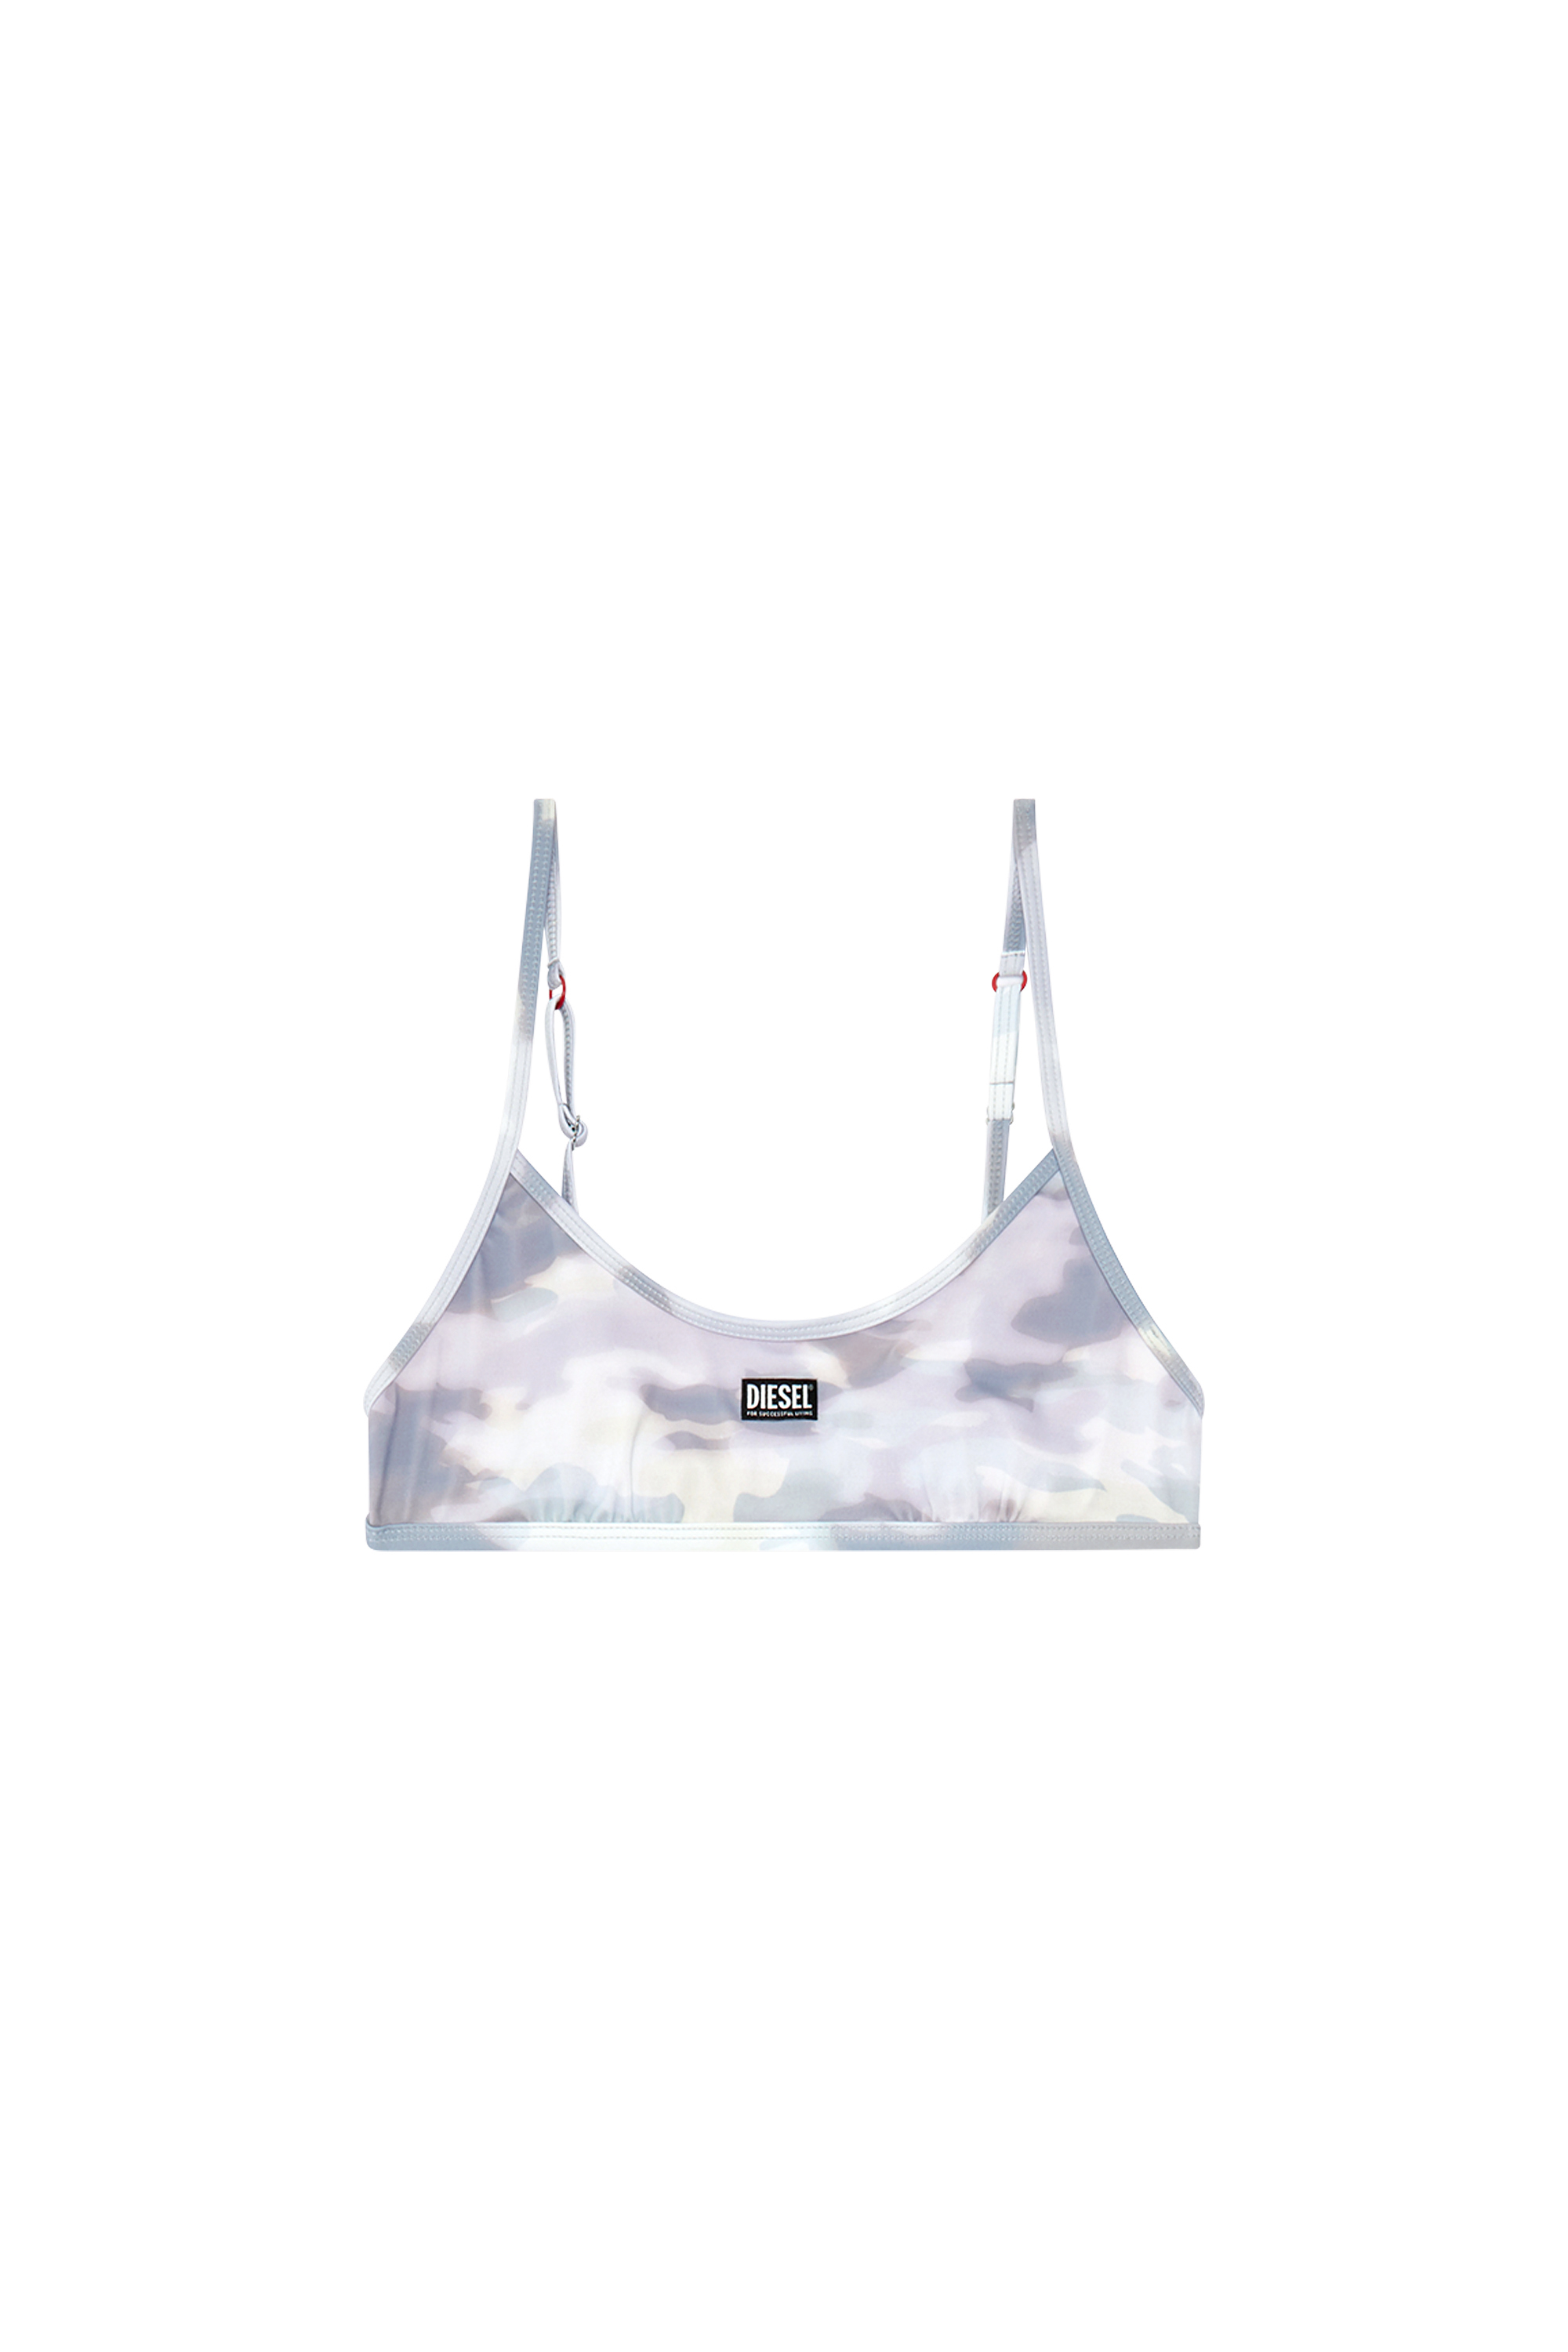 Diesel - BFB-NALA, Woman Printed bikini top in recycled nylon in Grey - Image 4